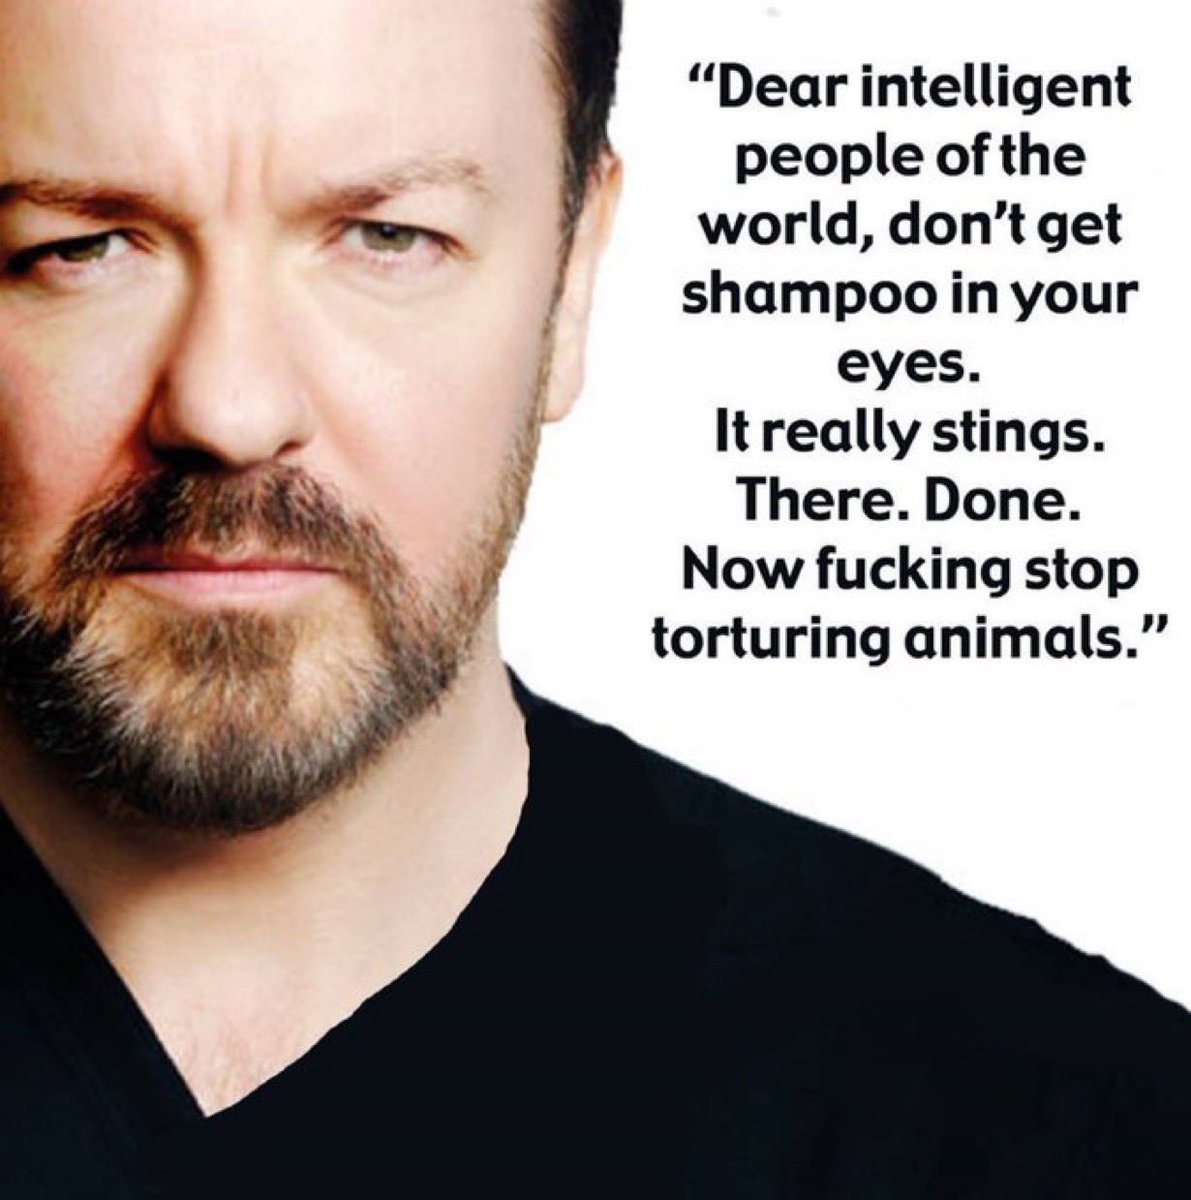 RT @FrasierHarry: Ricky Gervais.
Spot on. https://t.co/rmKnkwWyi6